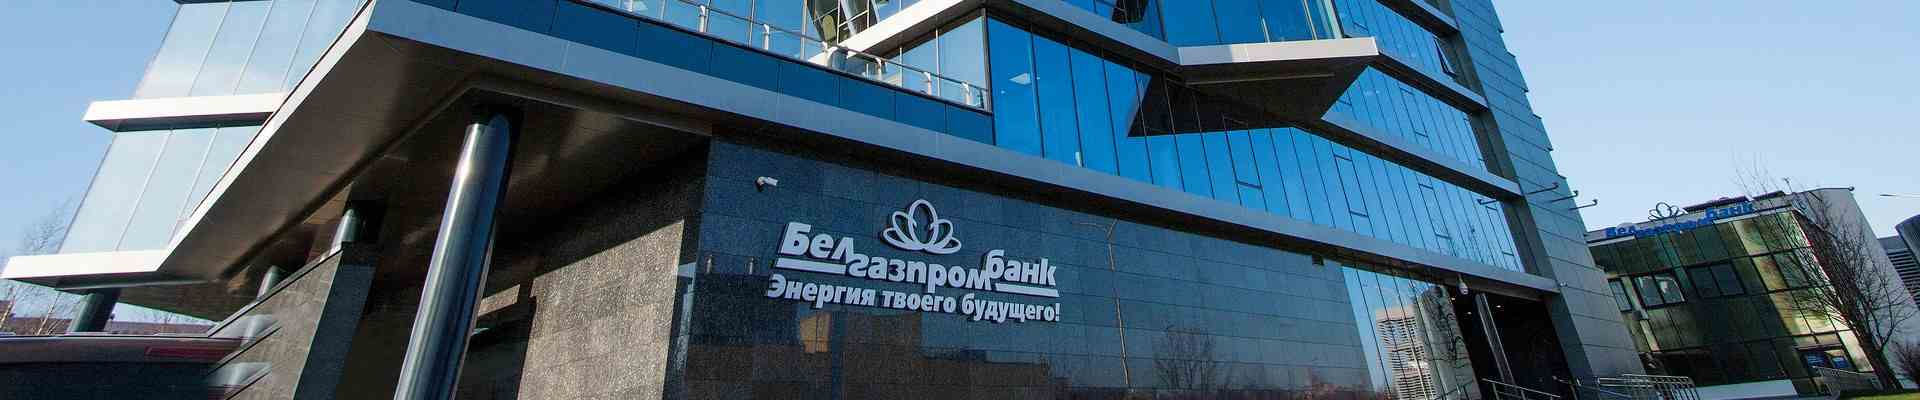 Акционеры компаний "Газпромбанк" и "Газпром" заявили о незаконности назначения главы белорусского банка